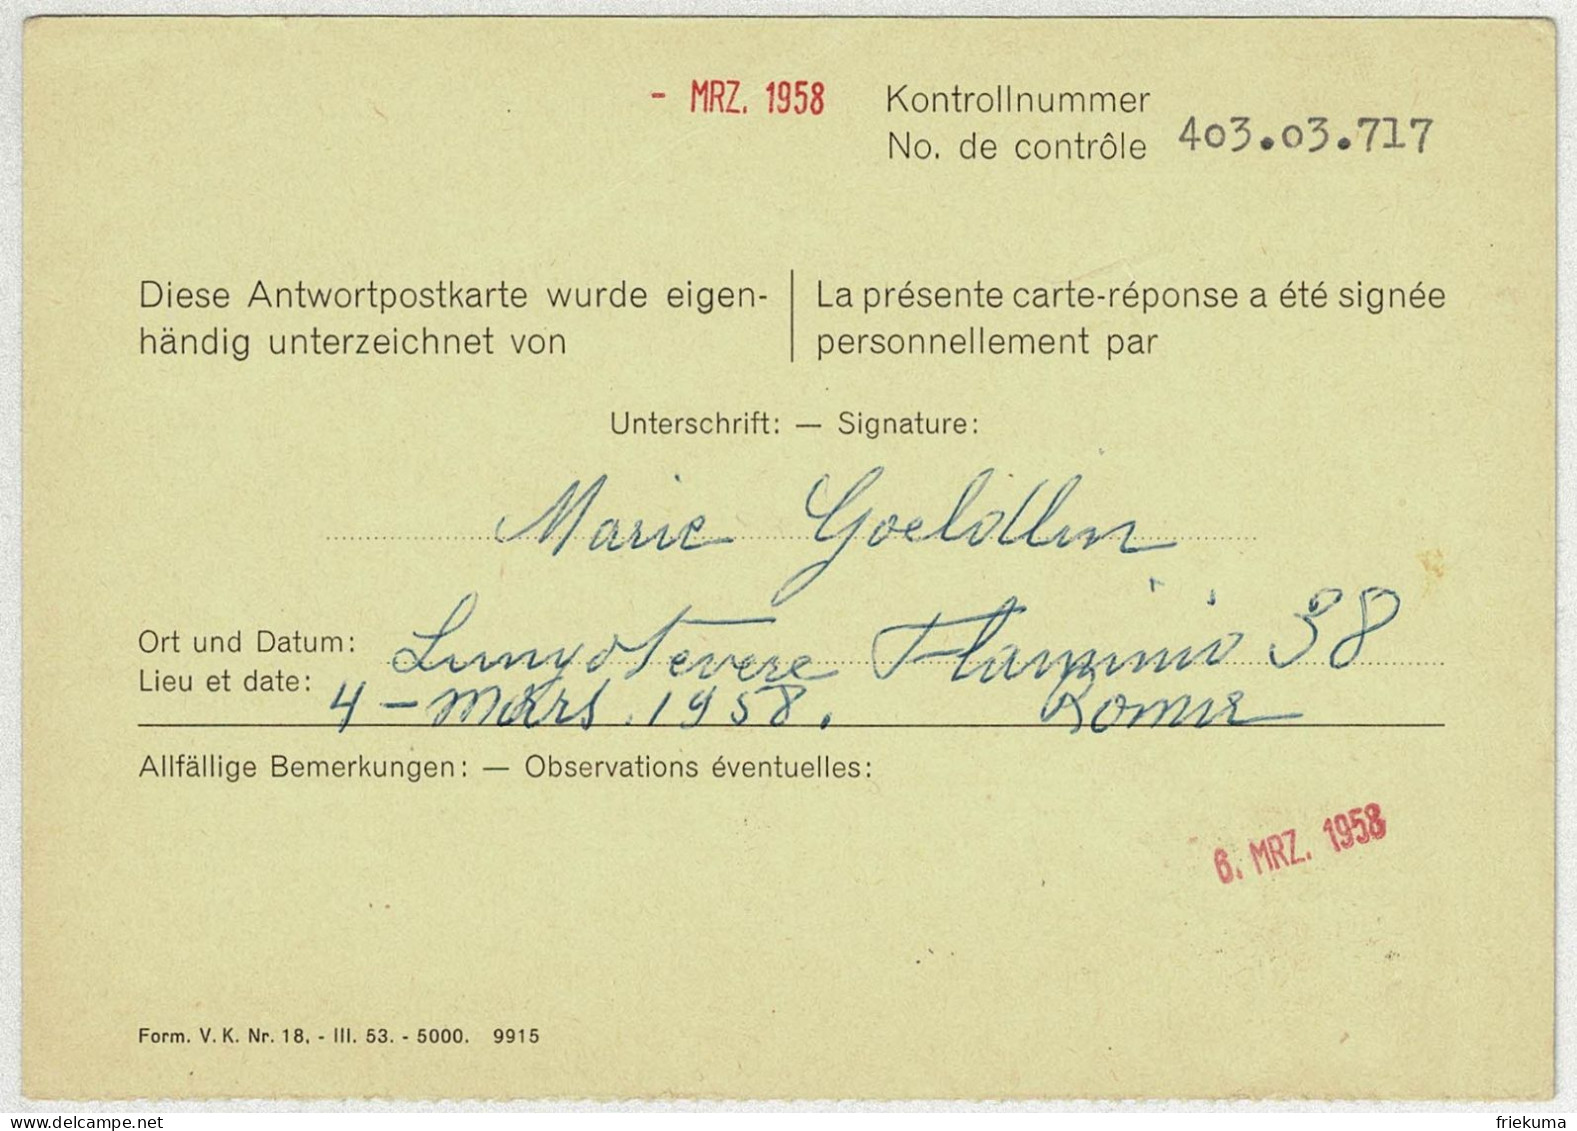 Schweiz 1958, Antwort-Postkarte Bern, Technik Und Landschaft Officiel - Oficial